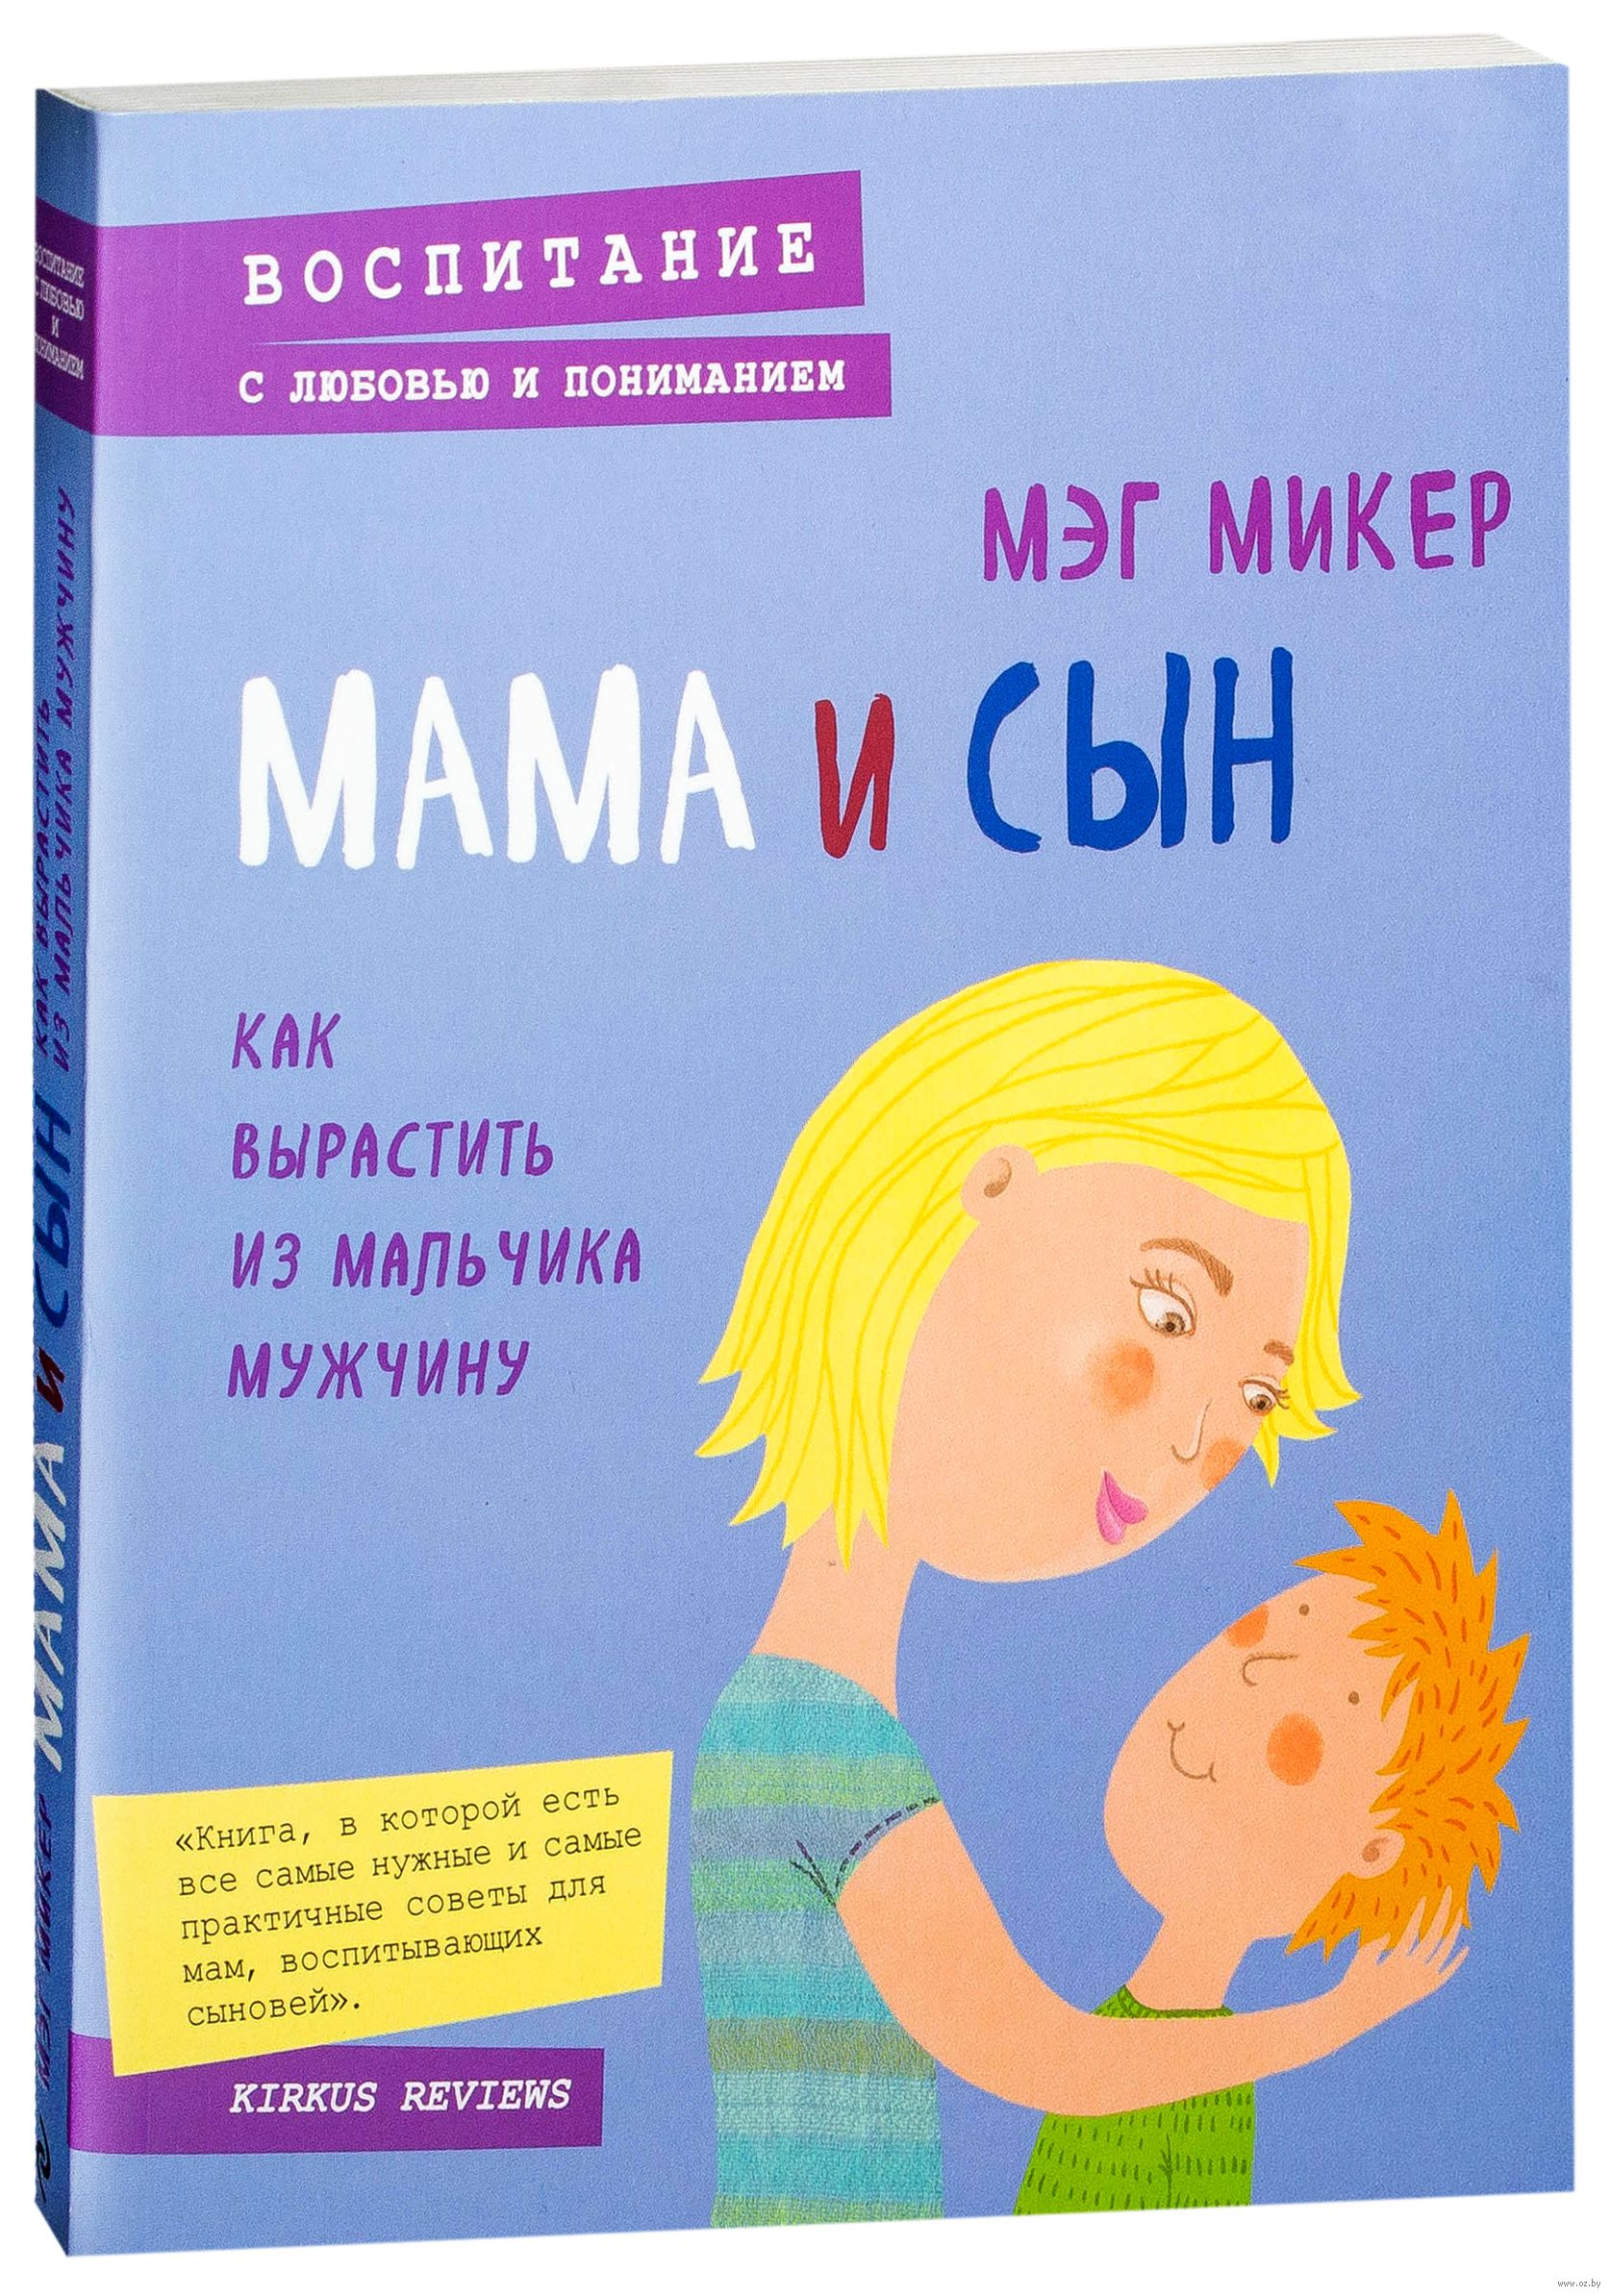 М мамаша. Книги. Книги о маме. Книги для мам мальчиков.